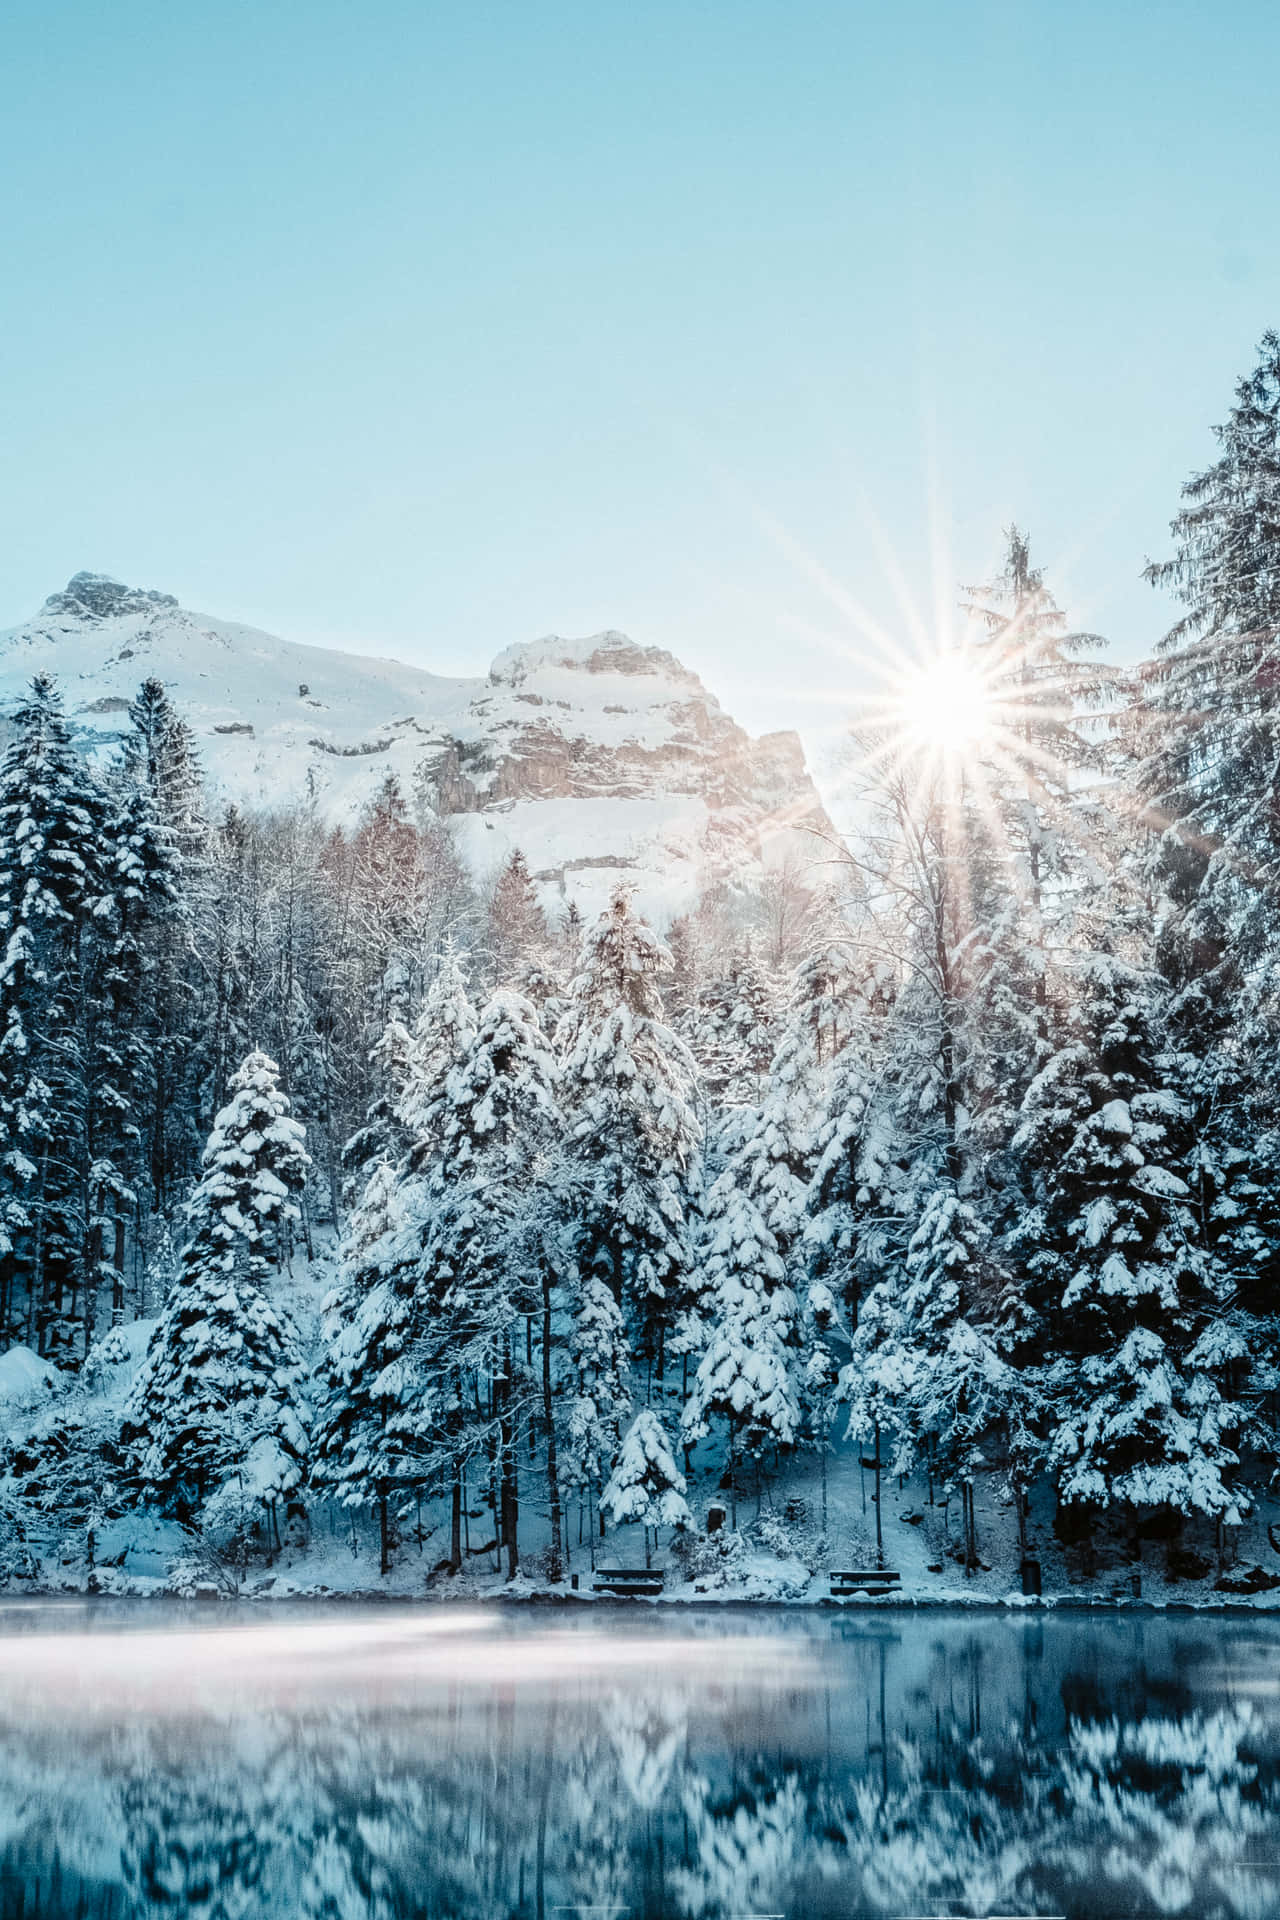 "A blissful winter wonderland awaits"